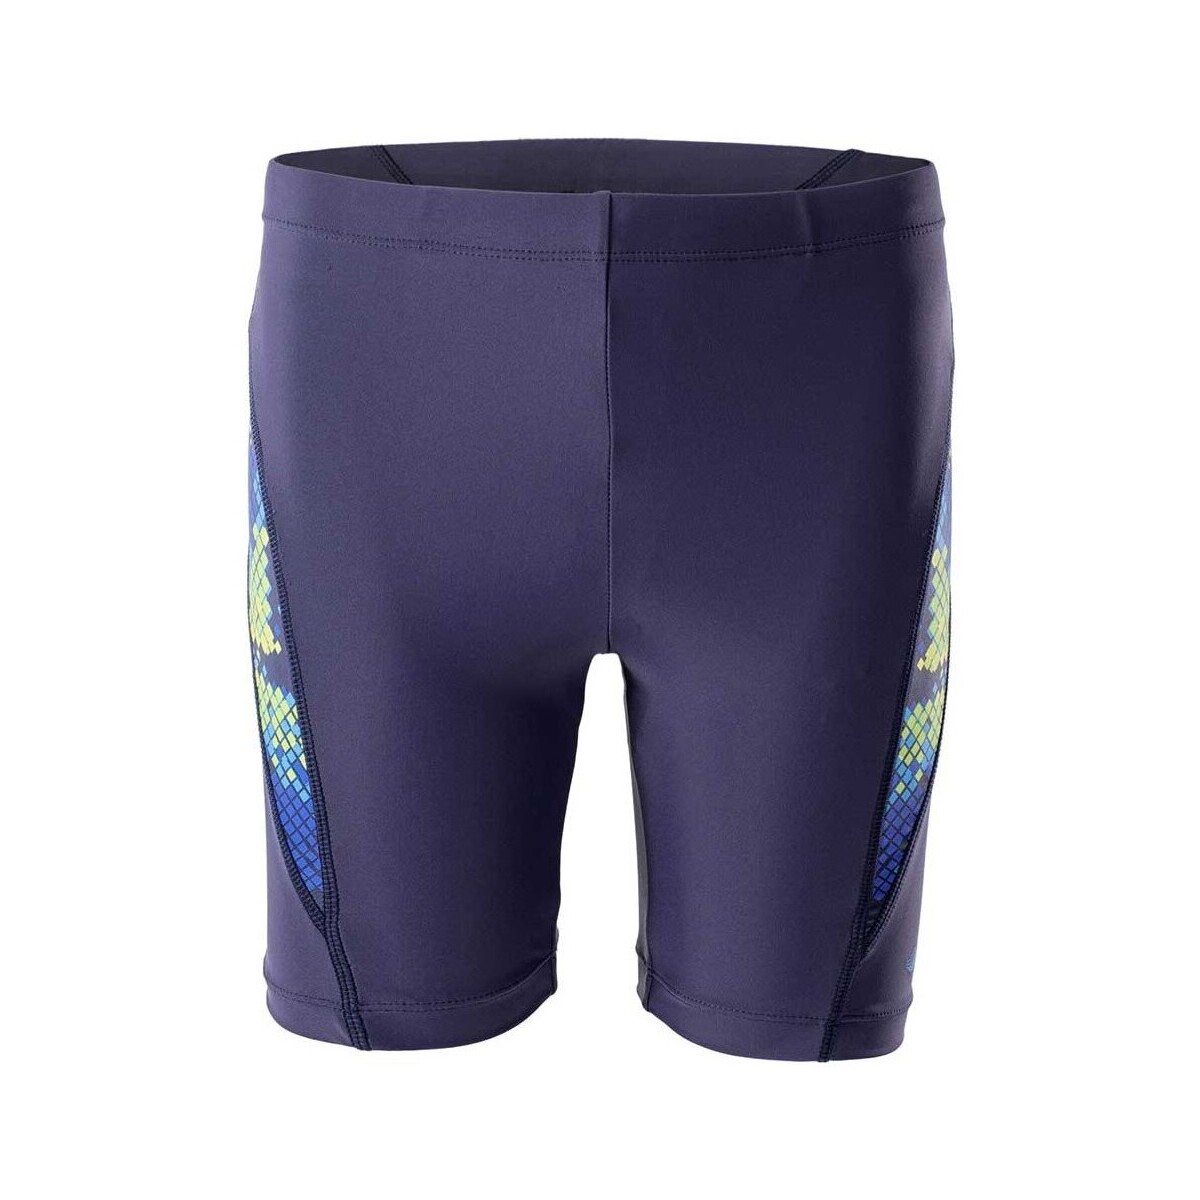 Vêtements Garçon Maillots / Shorts de bain Aquawave Barid Bleu